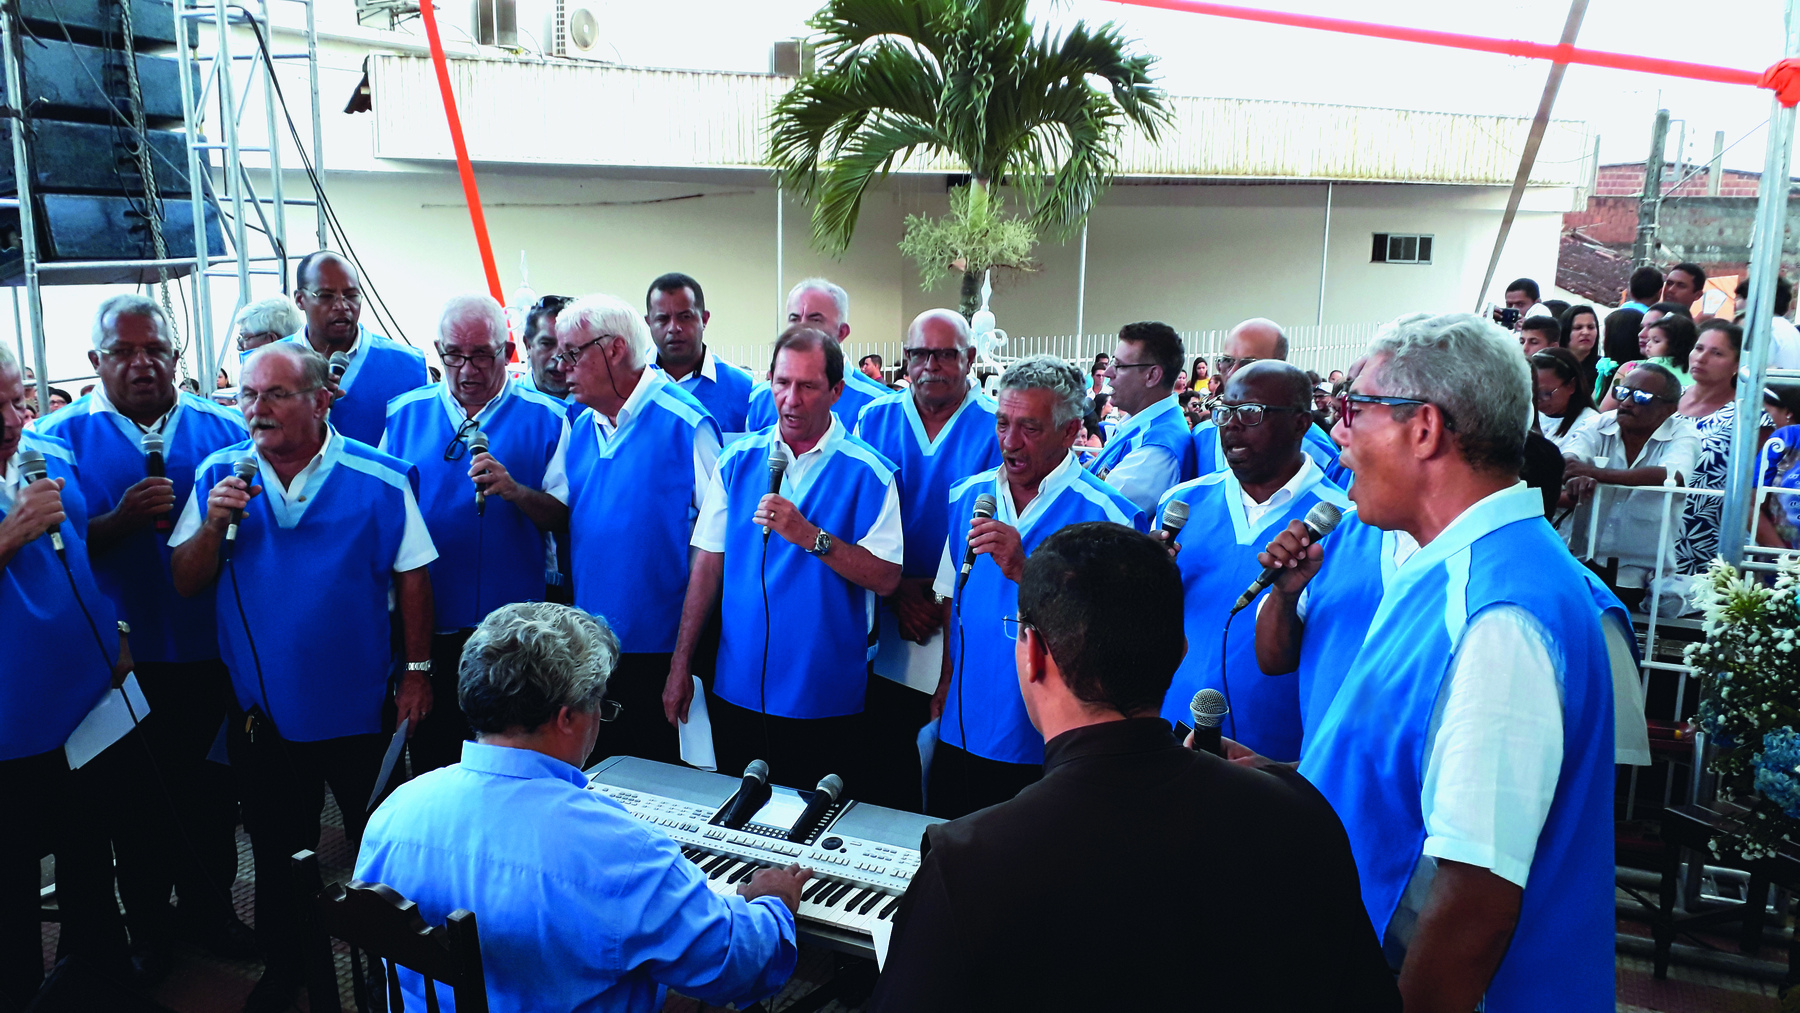 Fotografia. Homens idosos de camisa branca e colete azul. Eles cantam em microfones e estão em pé lado a lado em torno de um homem idoso de cabelo grisalho de camisa azul que está sentado e toca um teclado.